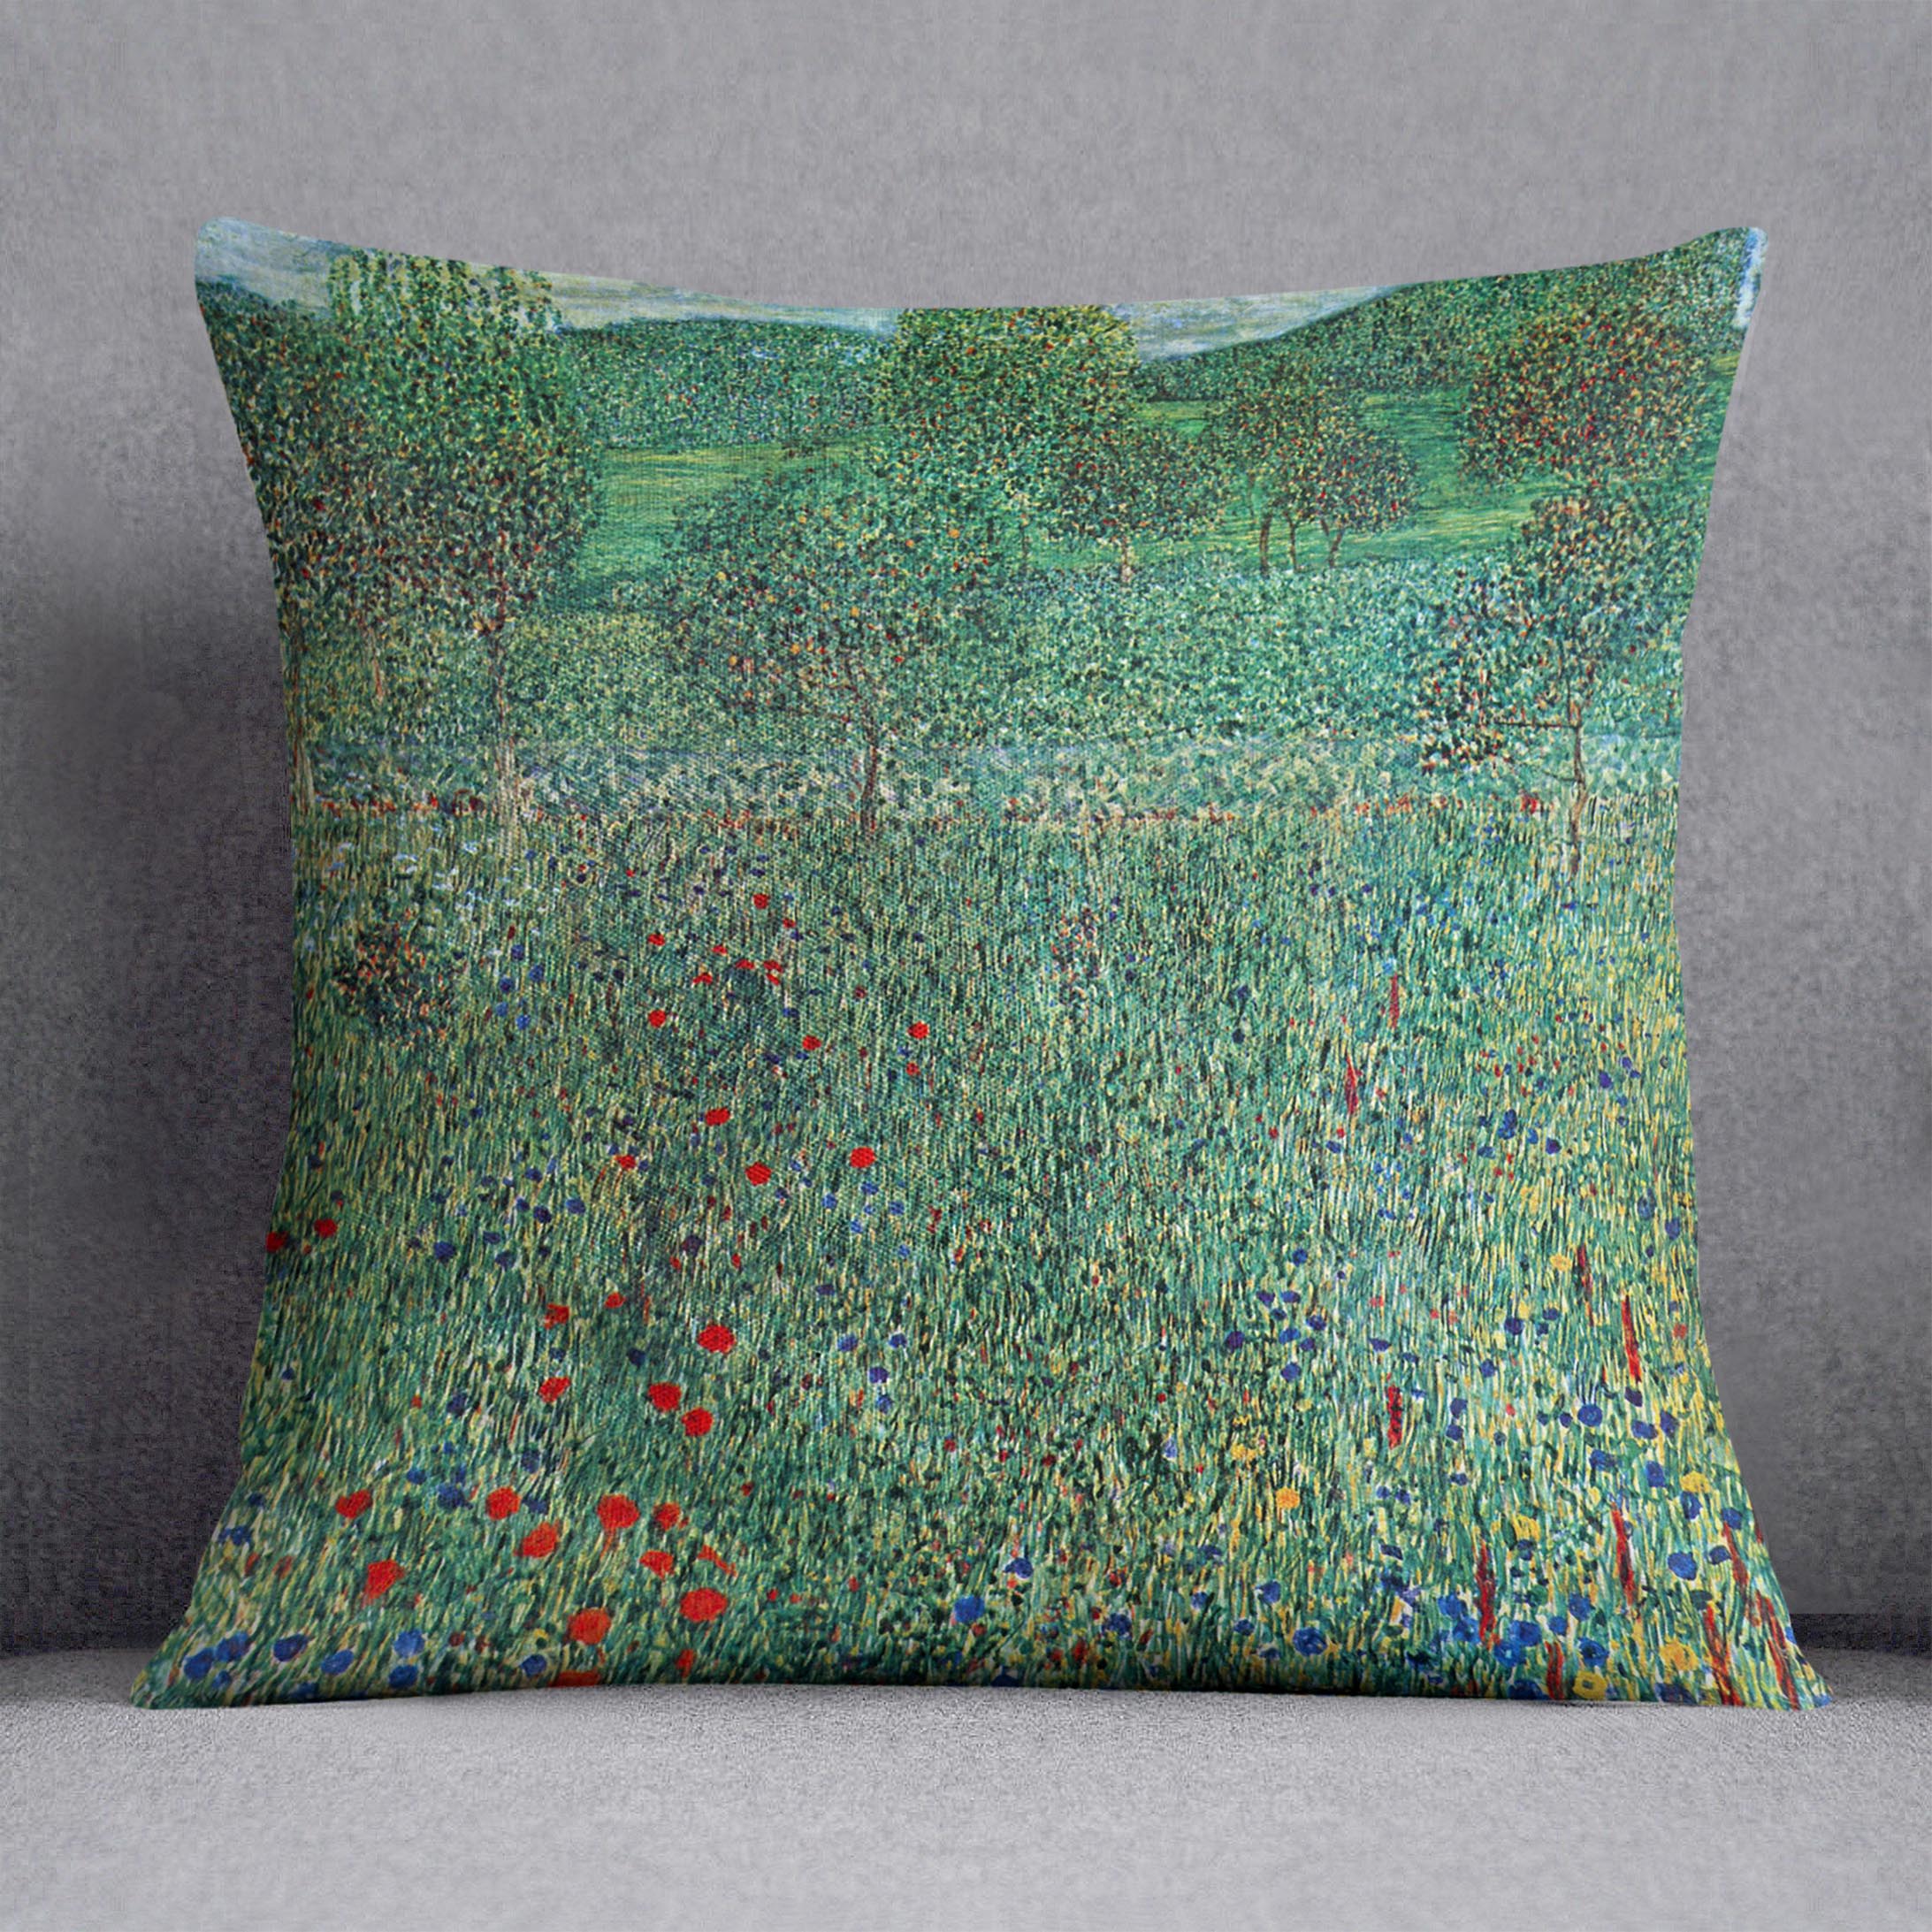 Garden landscape by Klimt Cushion